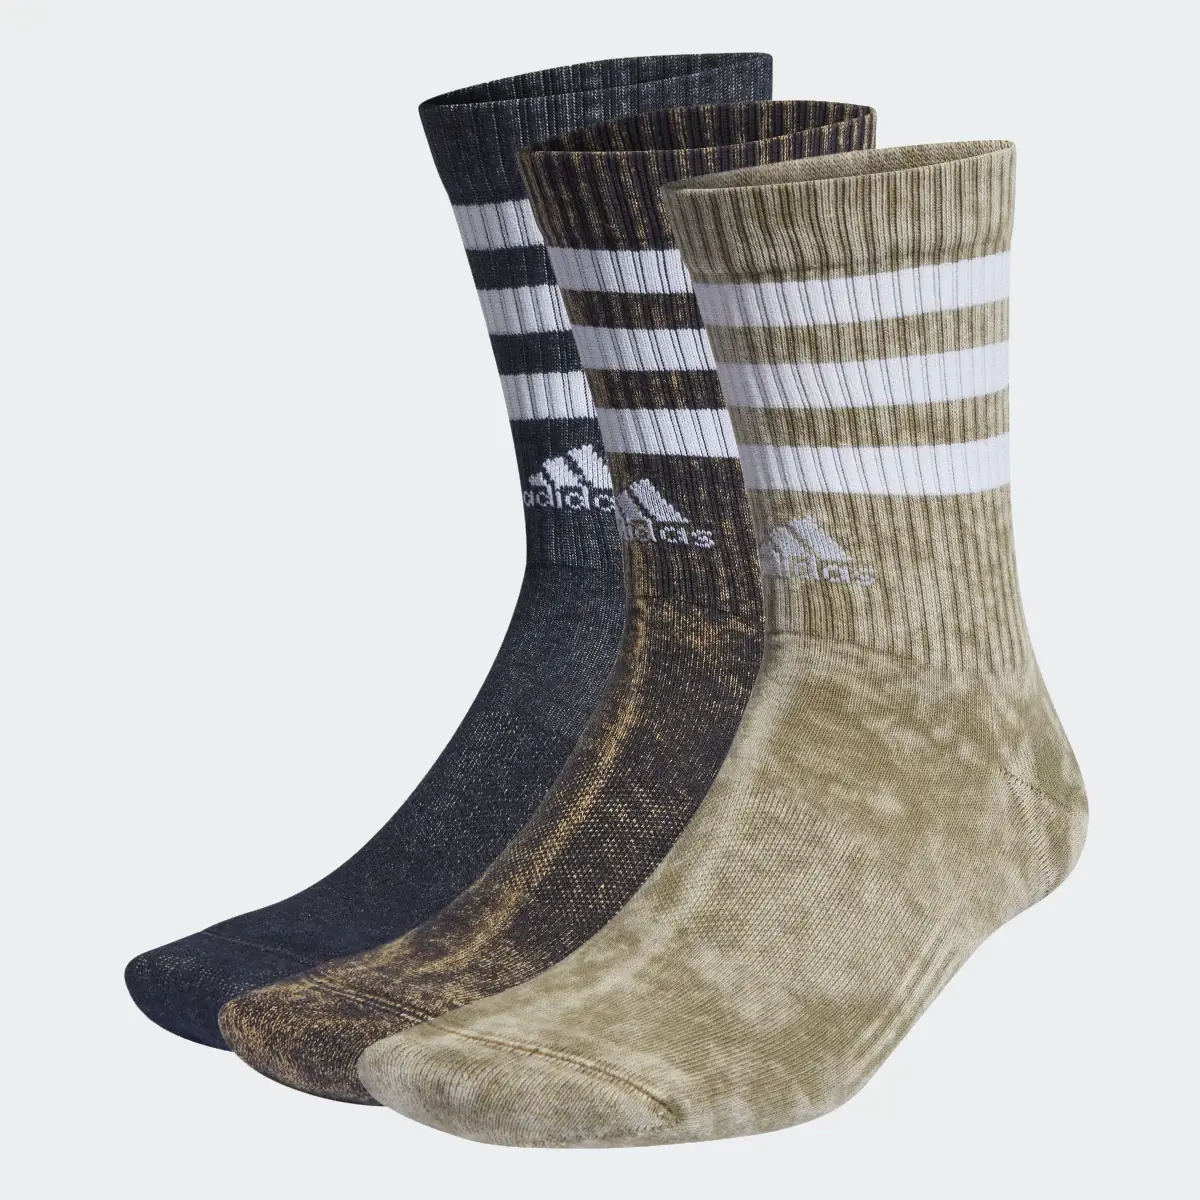 Adidas 3-Streifen Stonewash Crew Socken, 3 Paar. 2